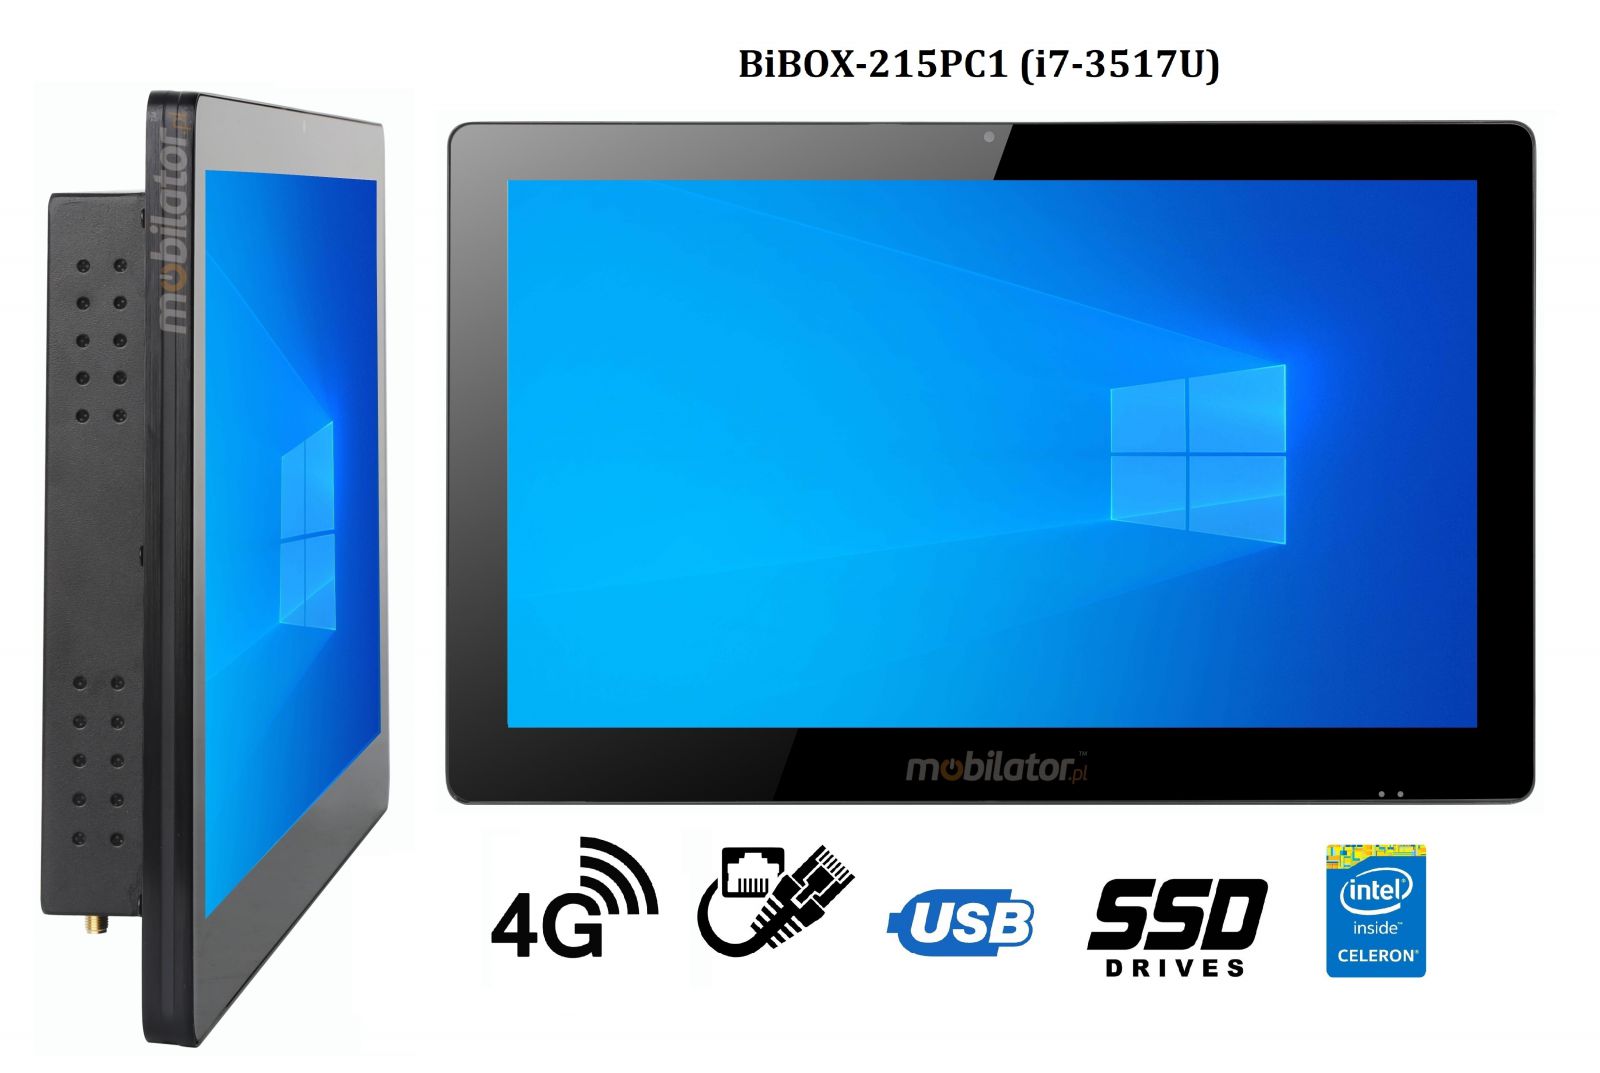 BiBOX-215PC1 (i7-3517U) v.5 - Wzmocniony panel komputerowy z IP65 (odporno woda i py) z dyskiem SSD 256 GB, technologi 4G oraz WiFi